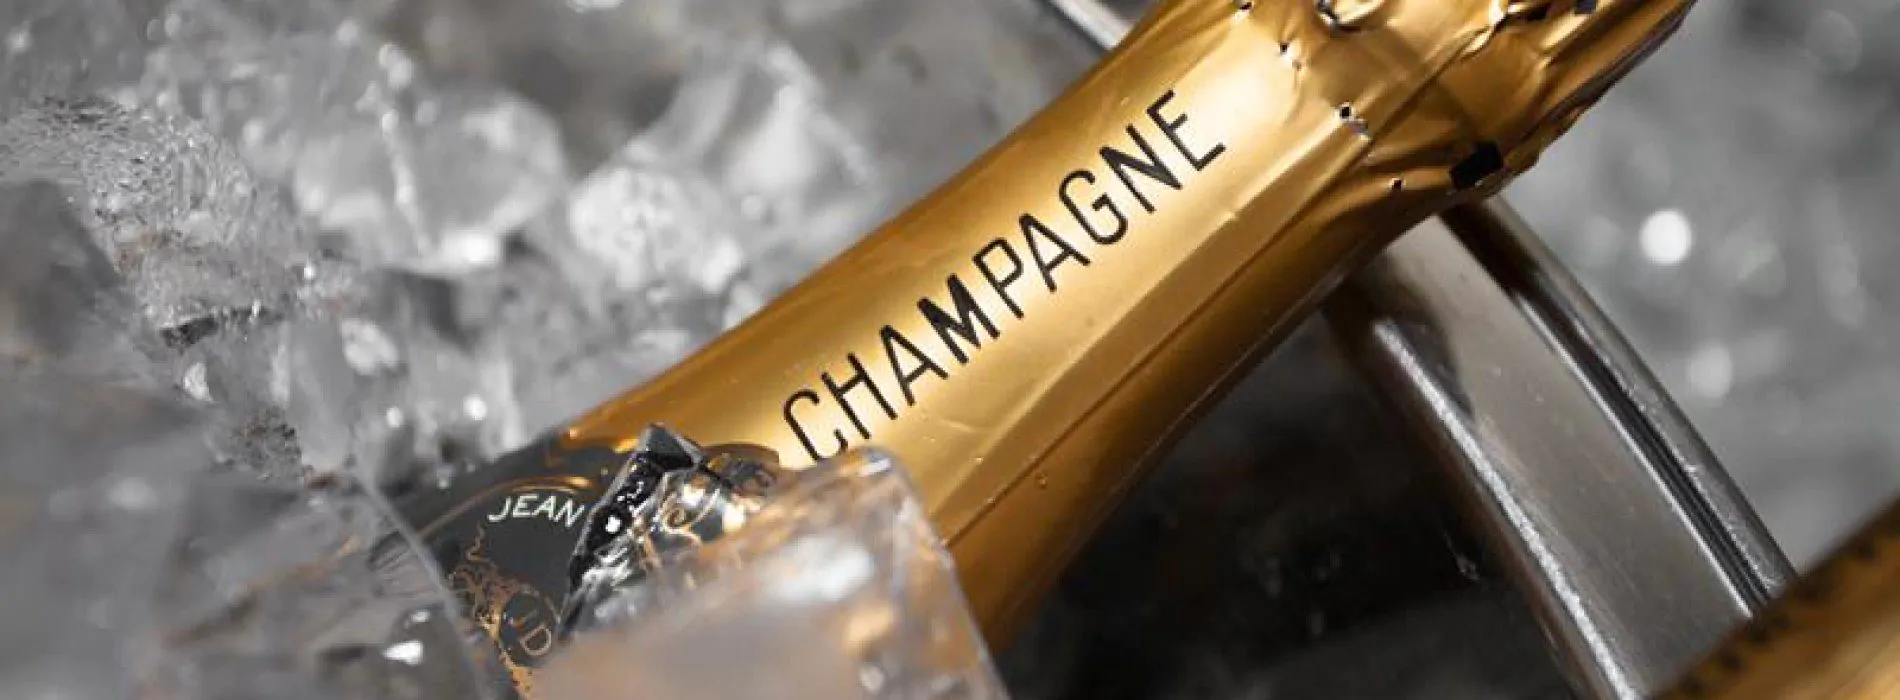 champagne: caratteristiche dei migliori